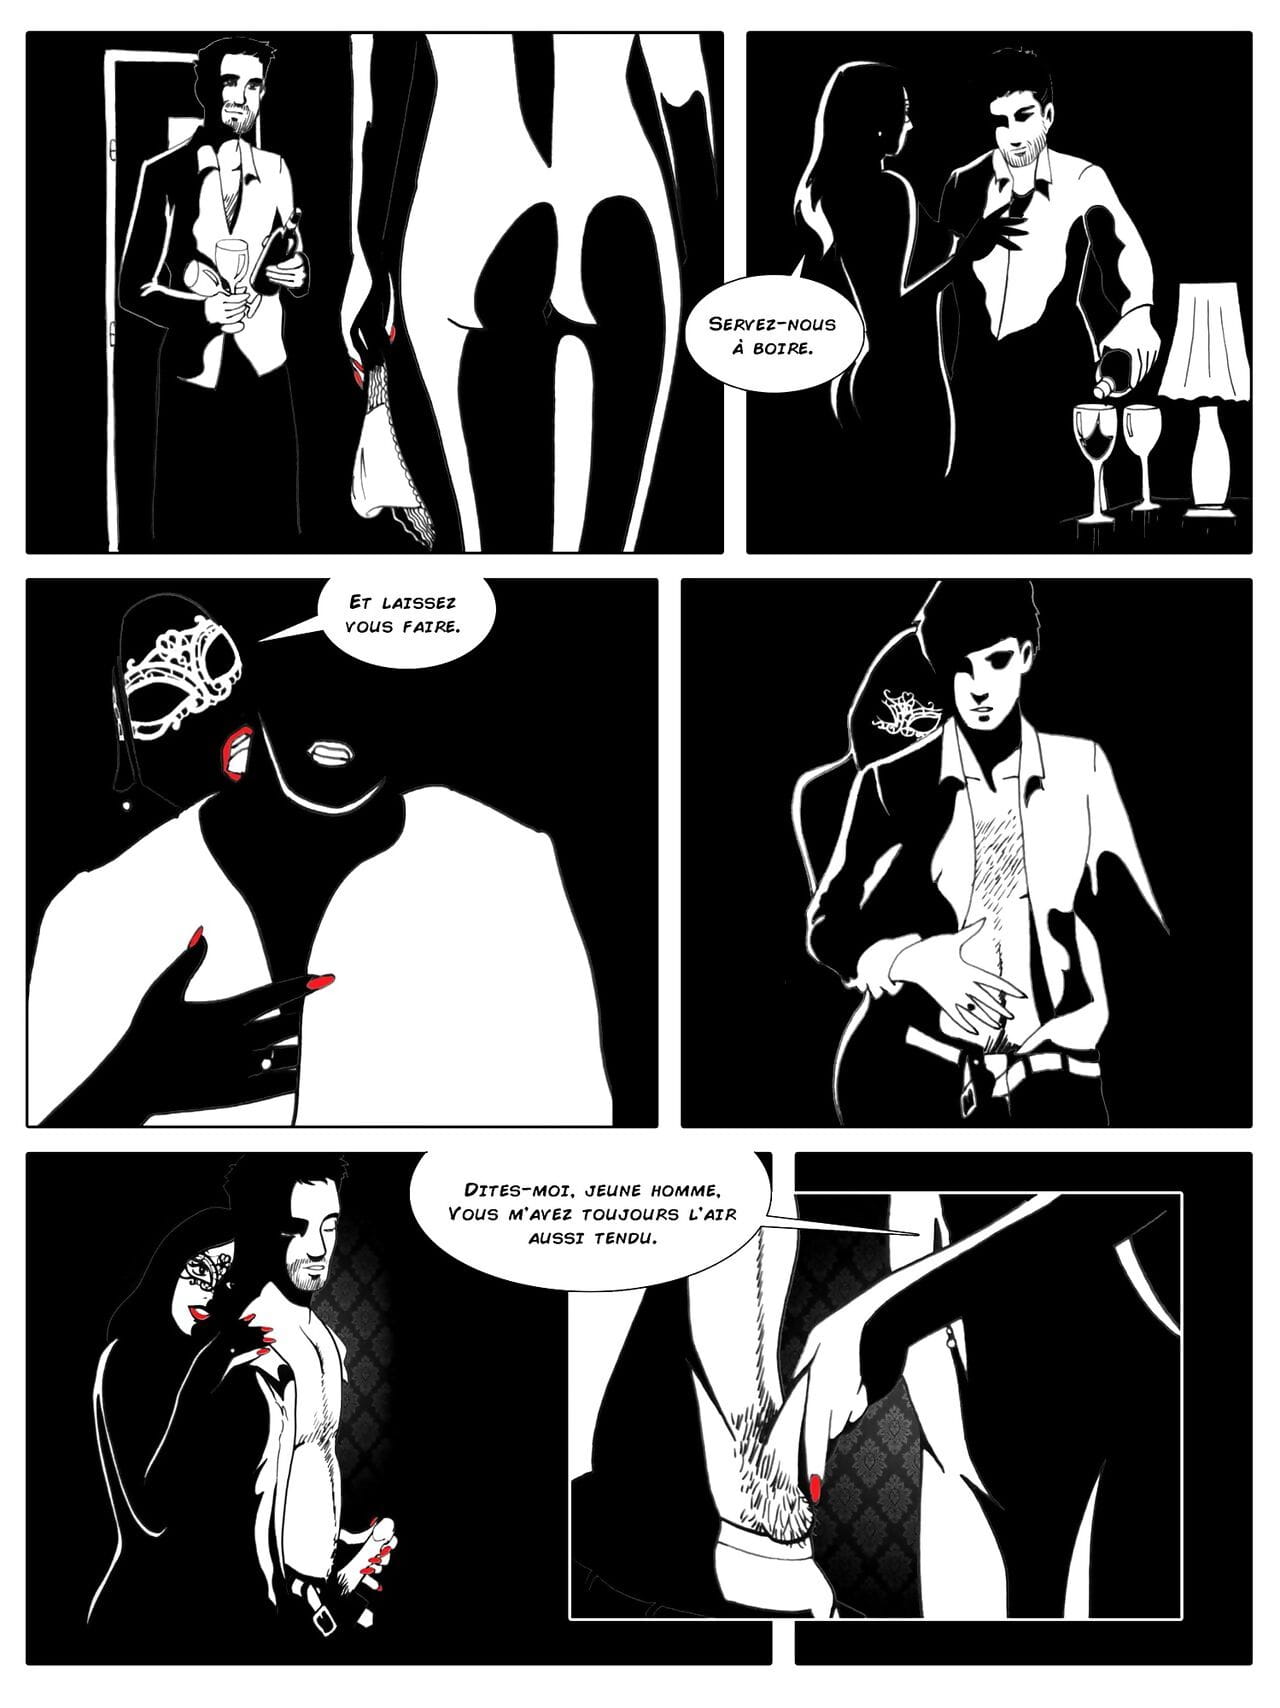 Amabilia - Volume 1 - part 2 page 1